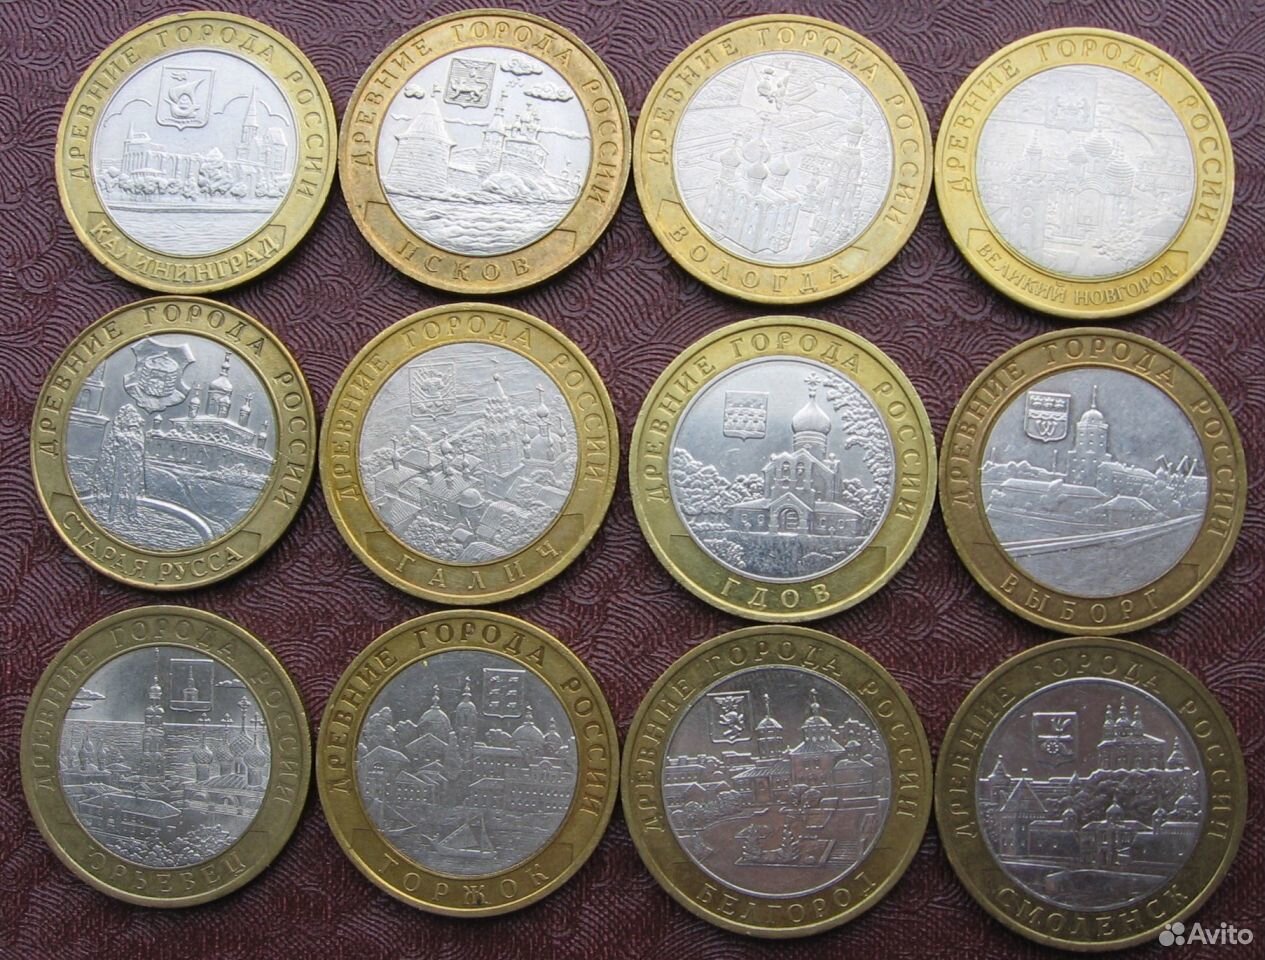 Продам российские монеты. 10 Р Биметалл. Коллекция монет. Юбилейные монеты. Старинные памятные монеты.